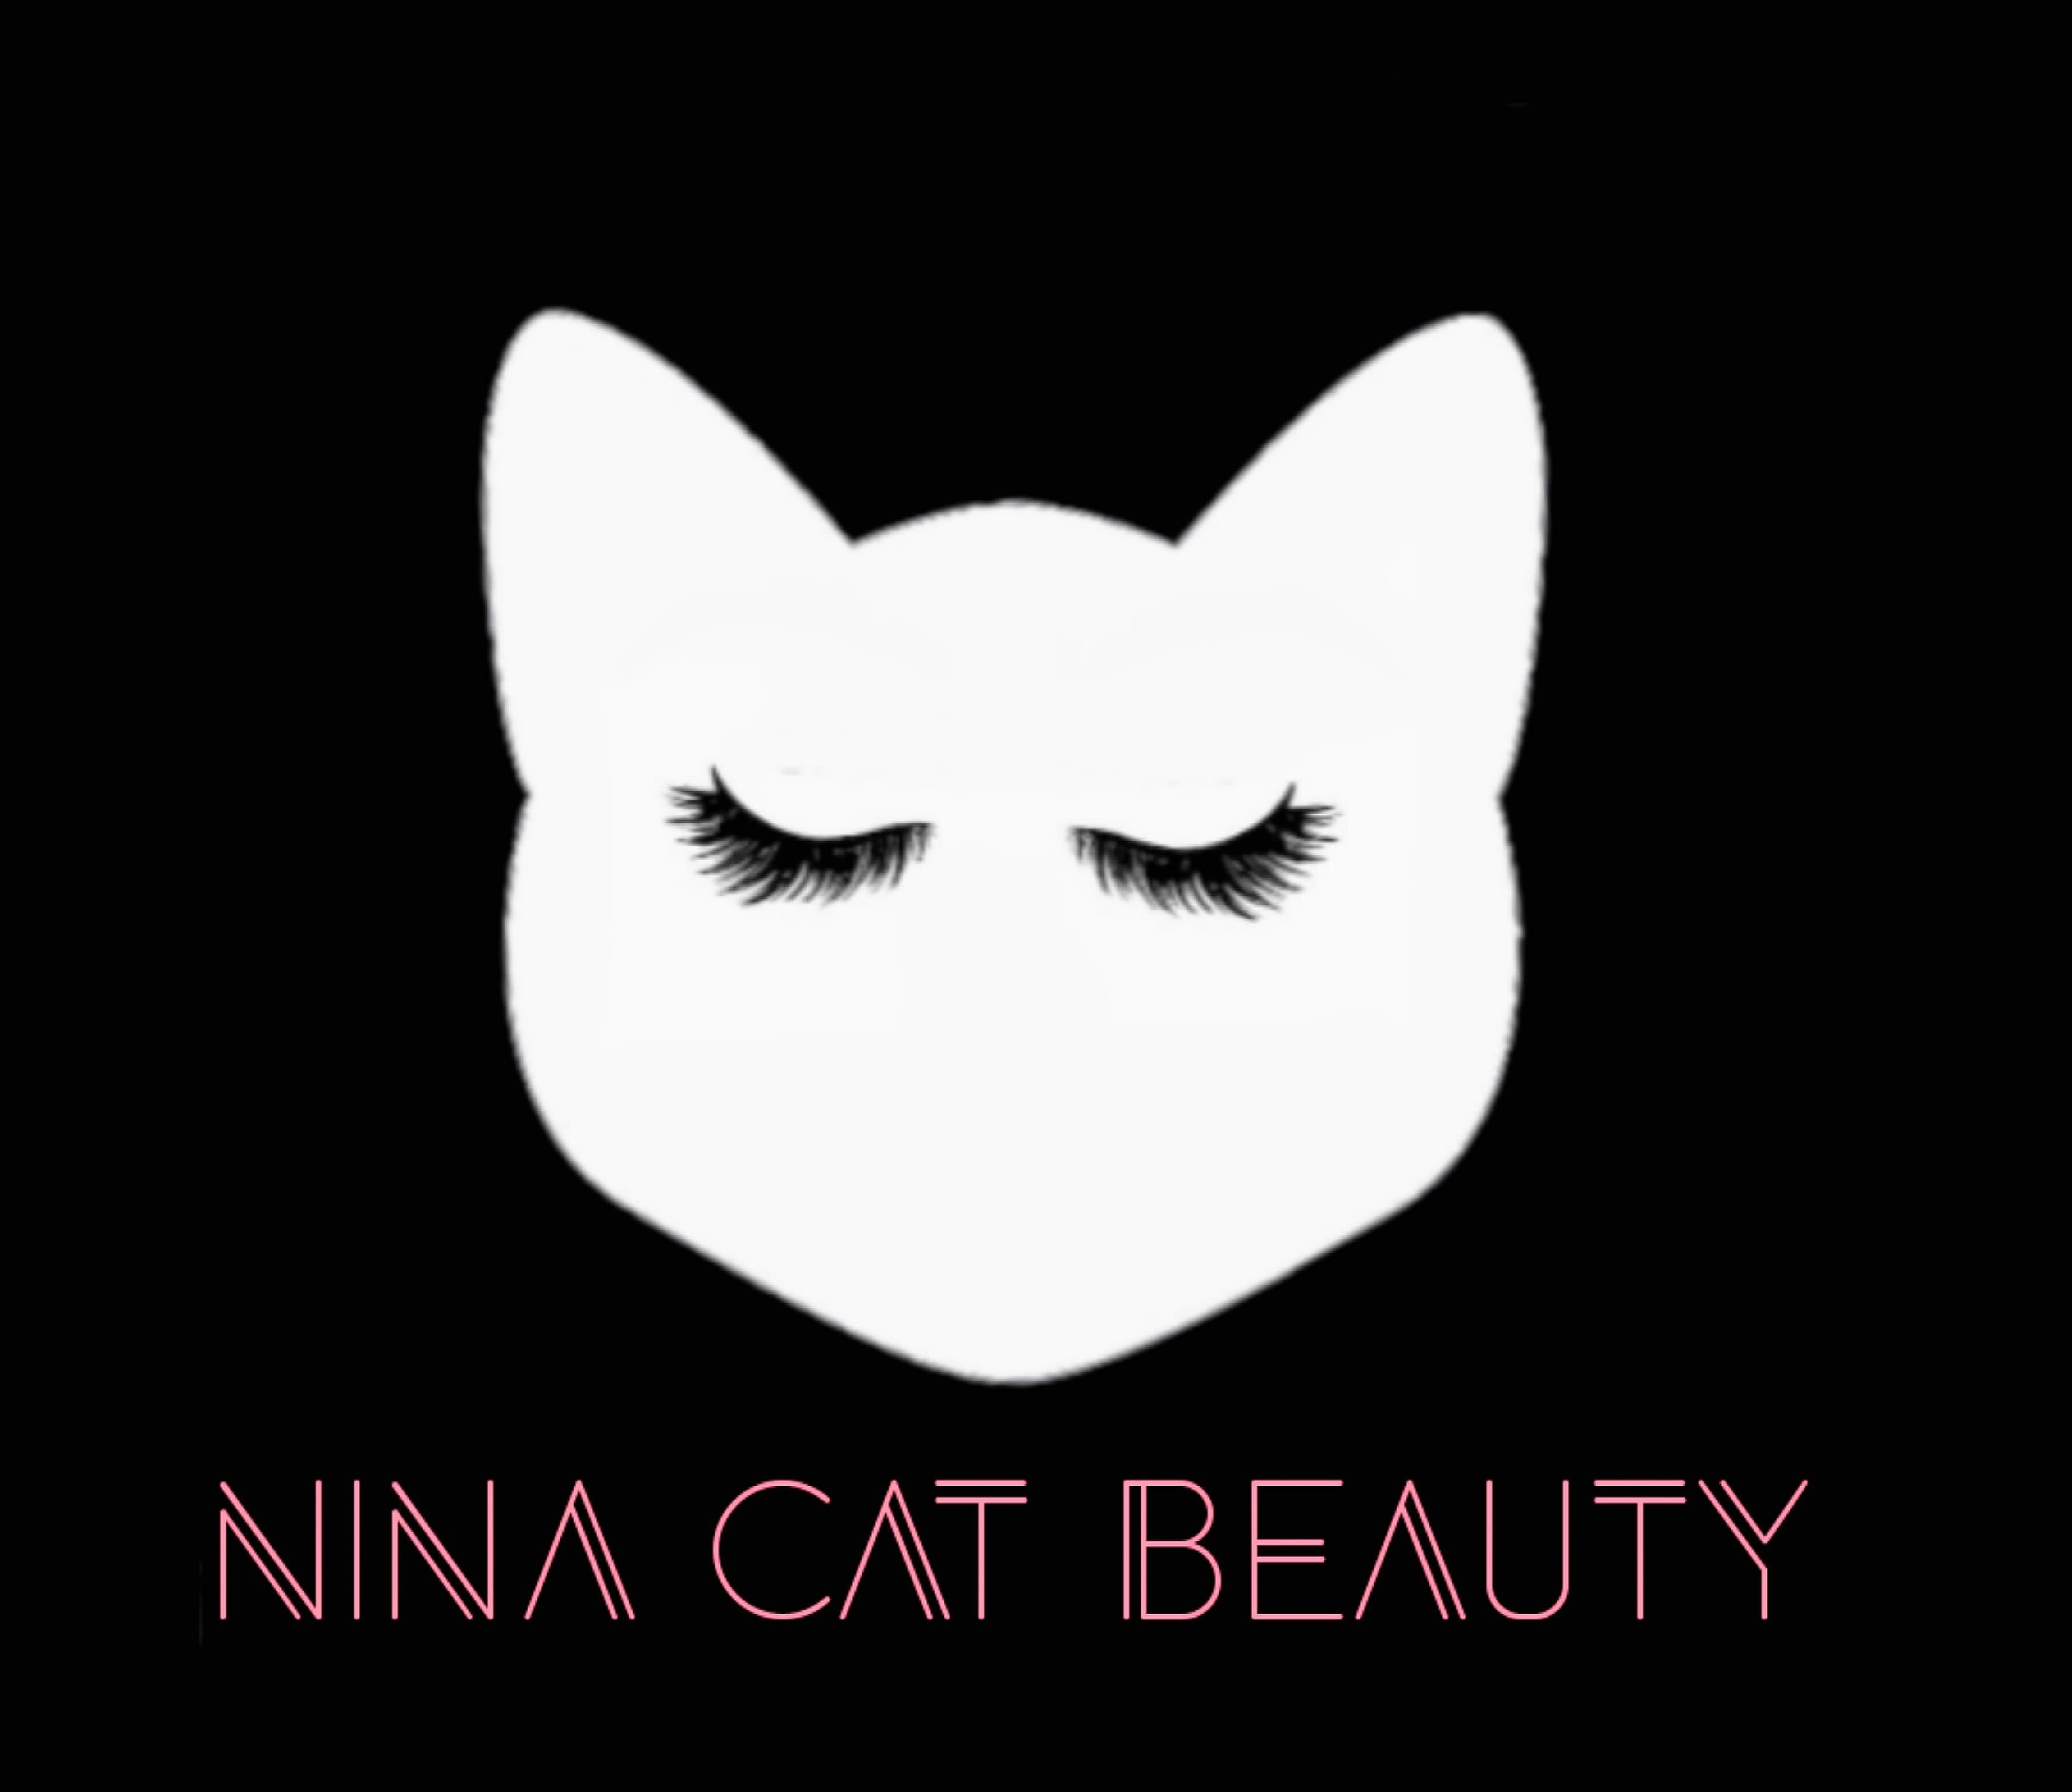 Nina Cat Beauty